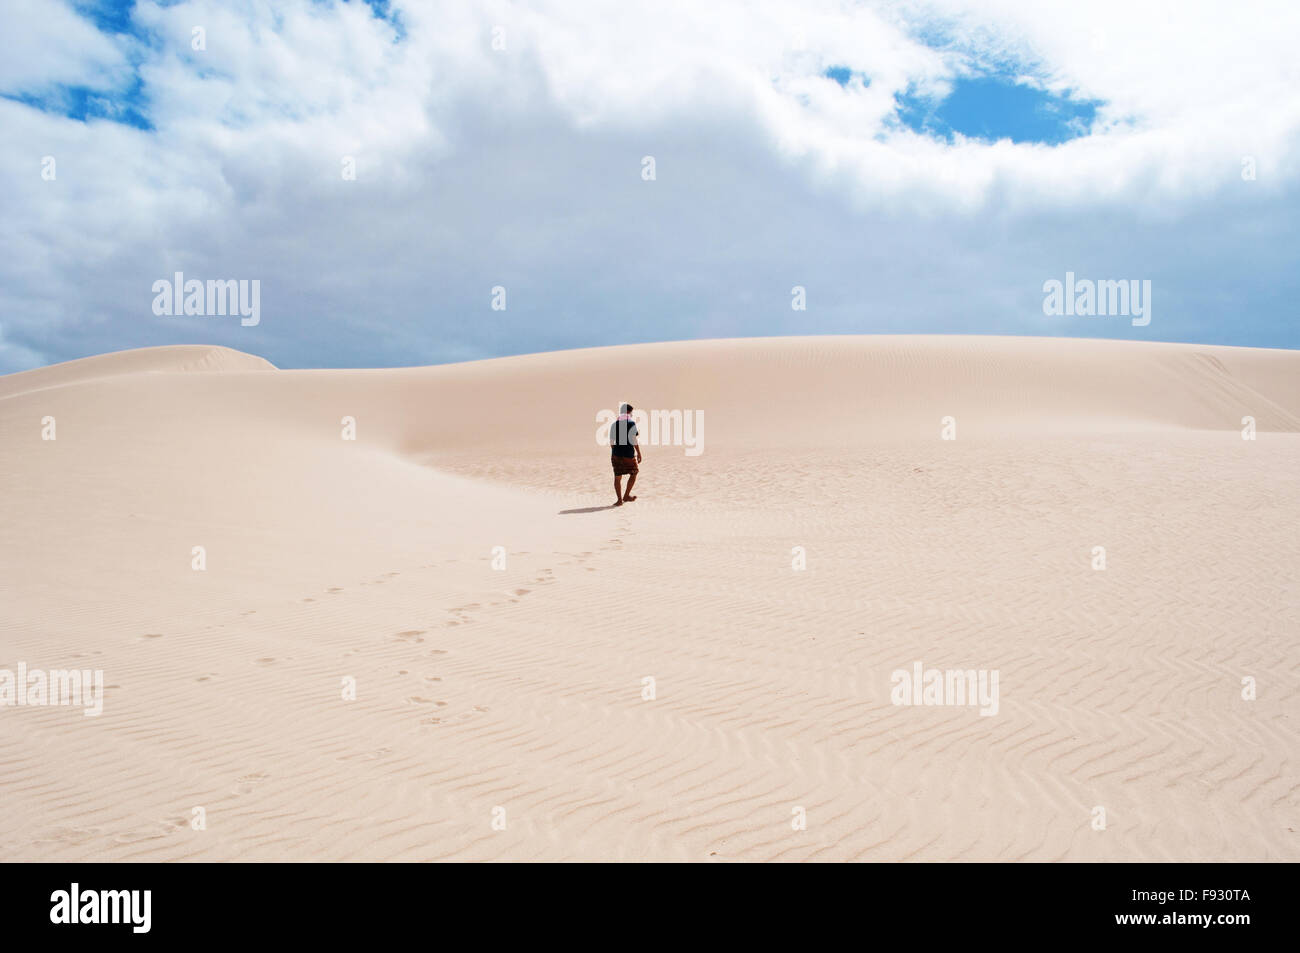 L'île de Socotra, au Yémen, au Moyen-Orient : un guide yéménite marche sur les dunes de sable de plage, Aomak stéréo, zone protégée, 4x4, excursion desert Banque D'Images